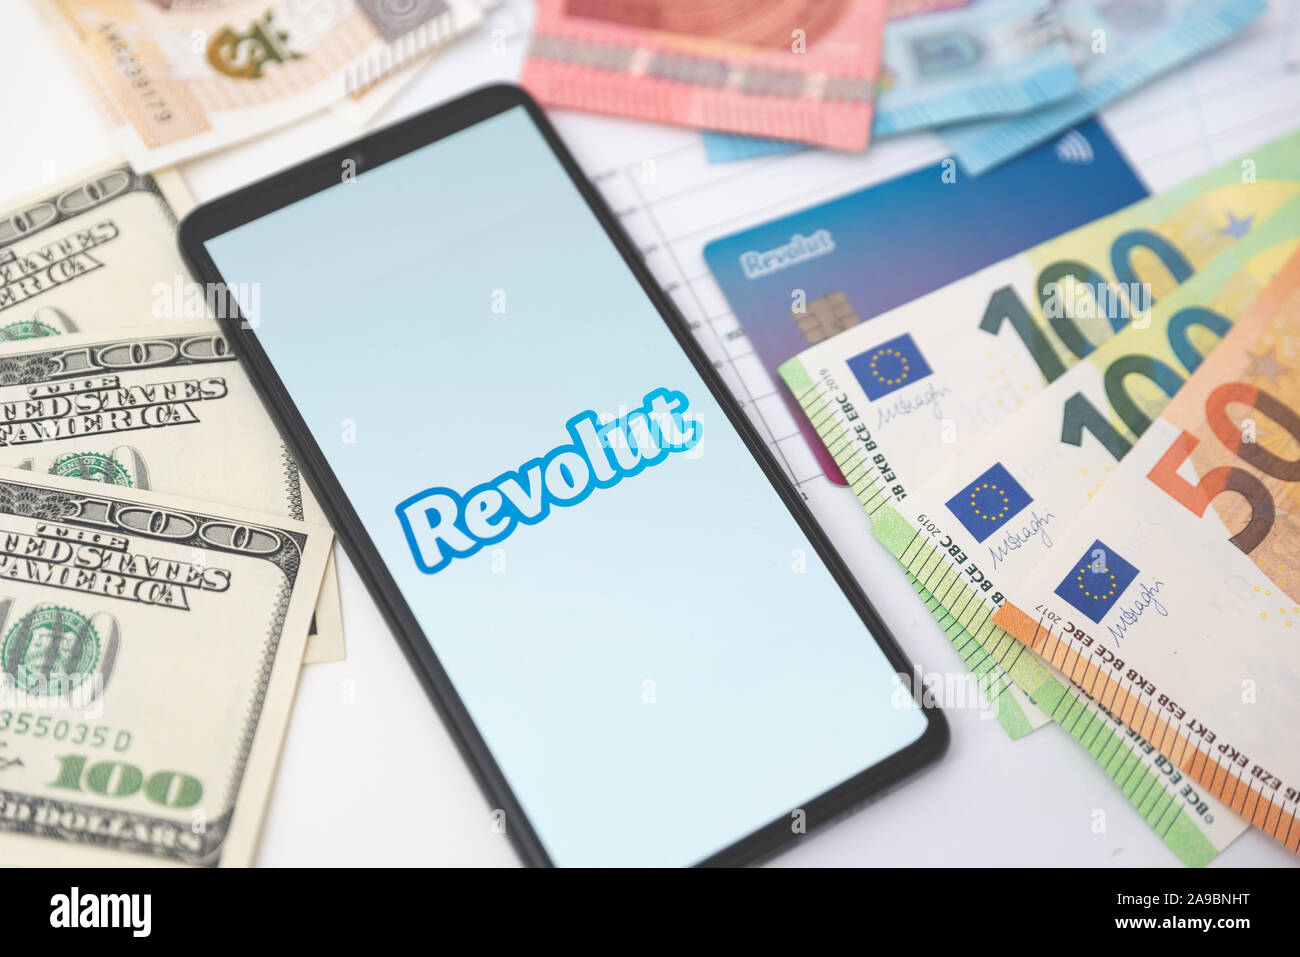 Wroclaw, Polonia - Nov 06, 2019: Revolut logo della banca sullo schermo dello smartphone accanto alle banconote. Revolut Ltd è un regno unito financial technology company che di Foto Stock